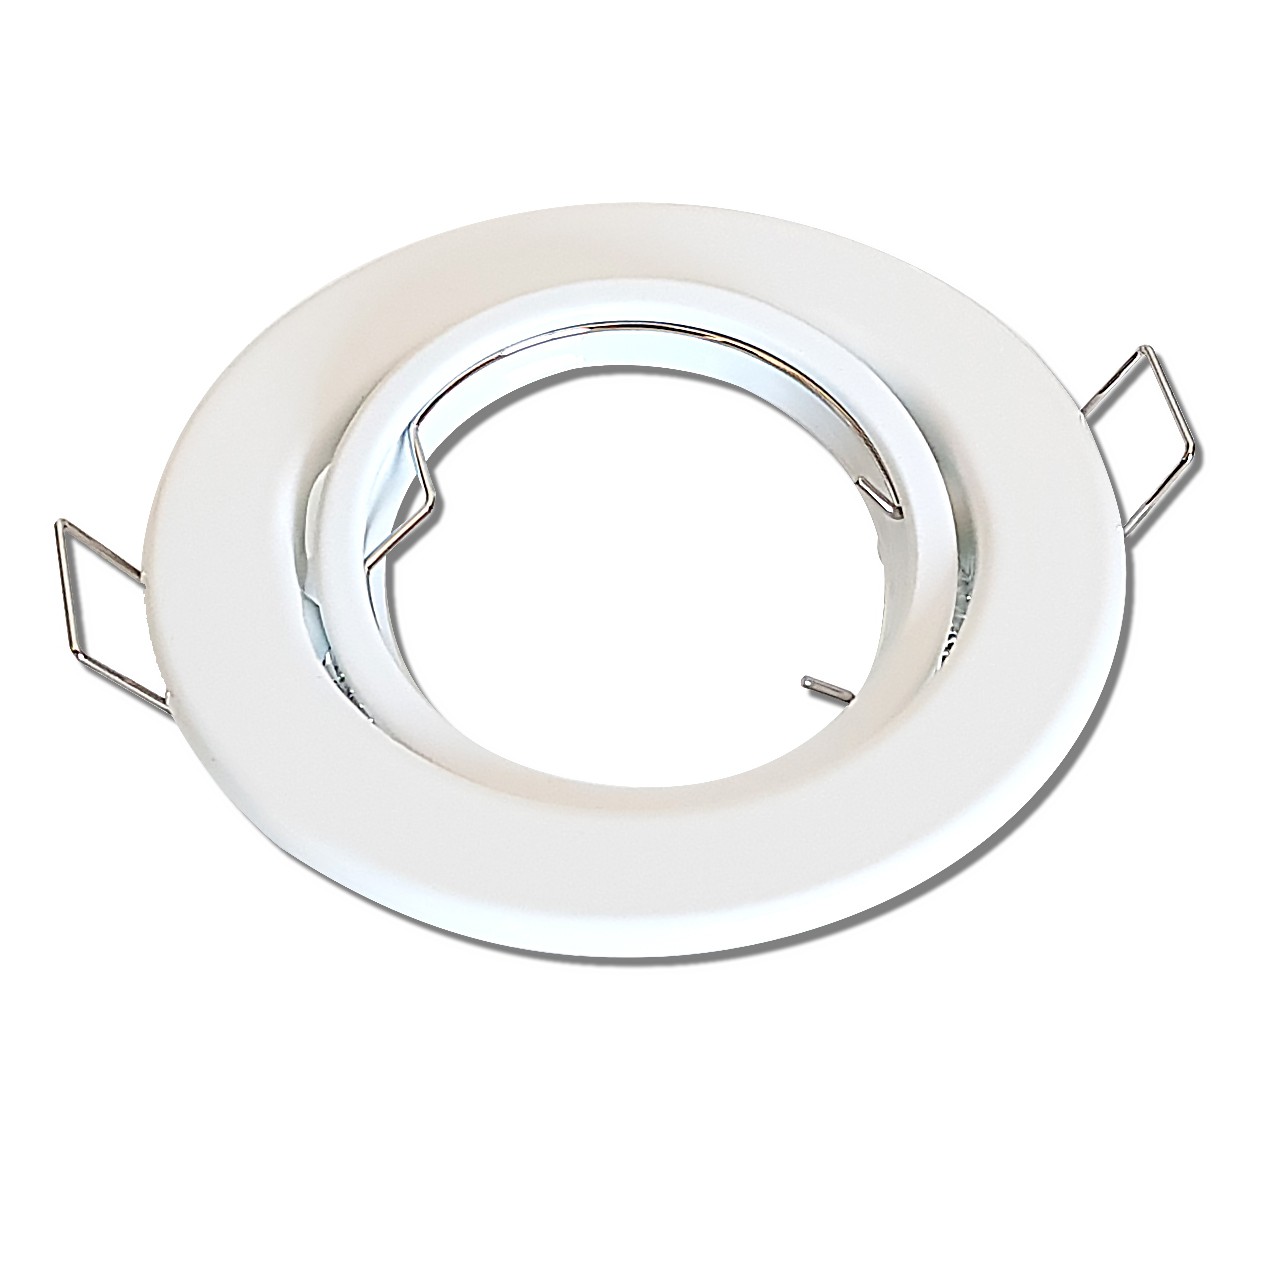 Support encastrable ronde orientable blanc pour ampoule GU10 Led ou halogène